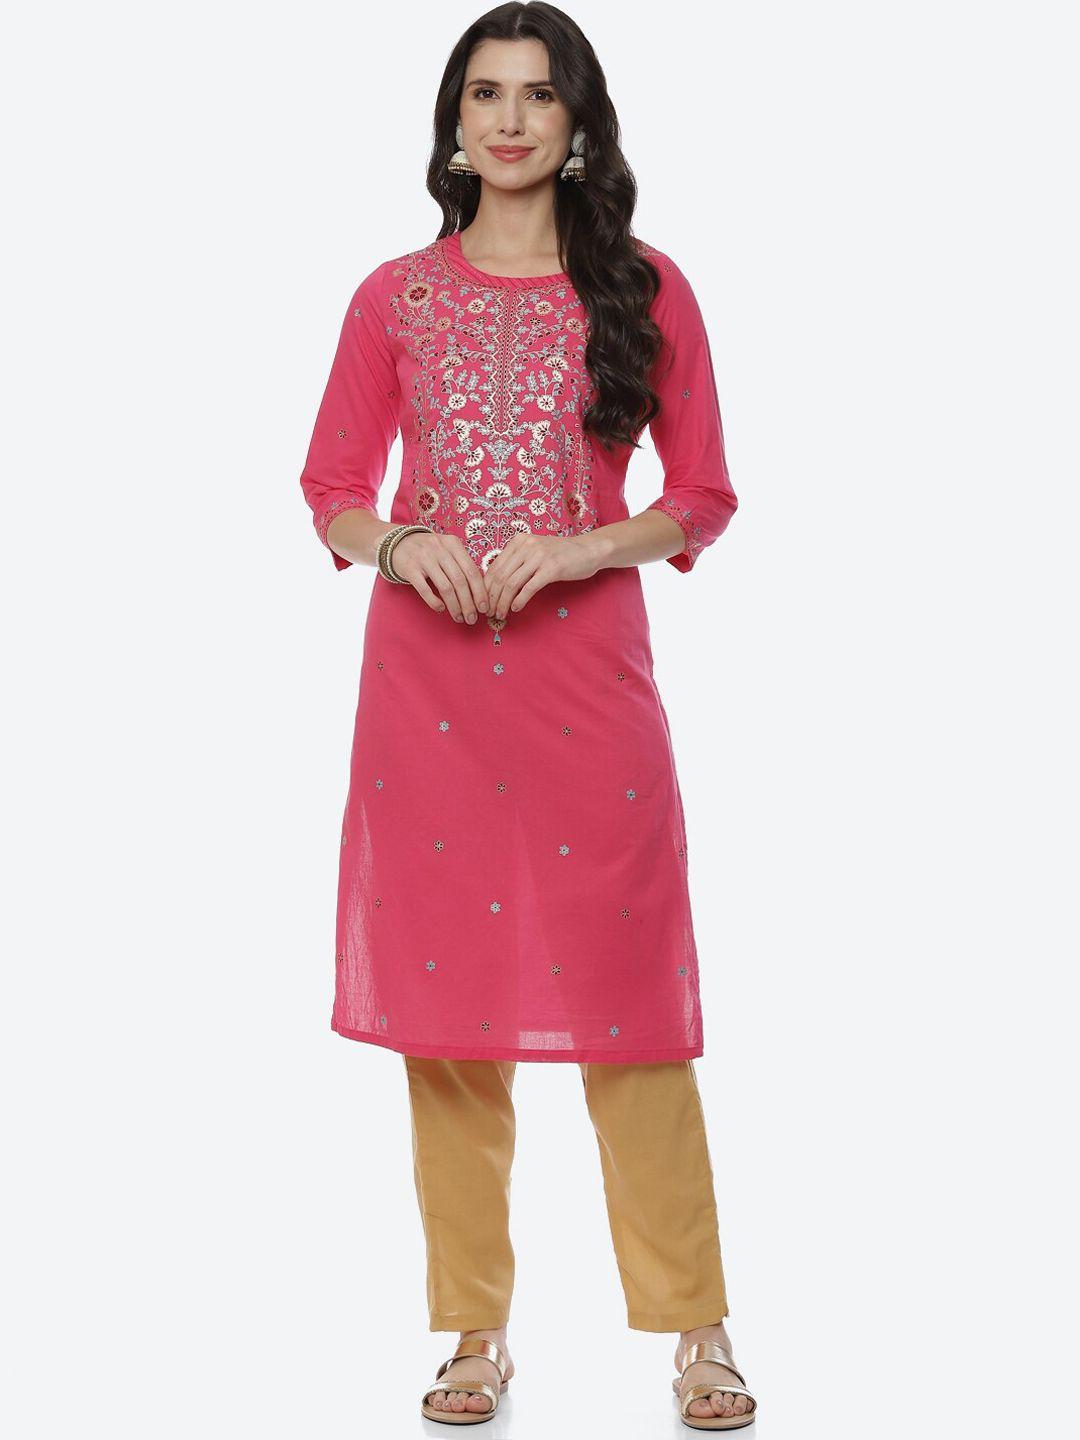 rangriti women pink ethnic motifs printed kurta